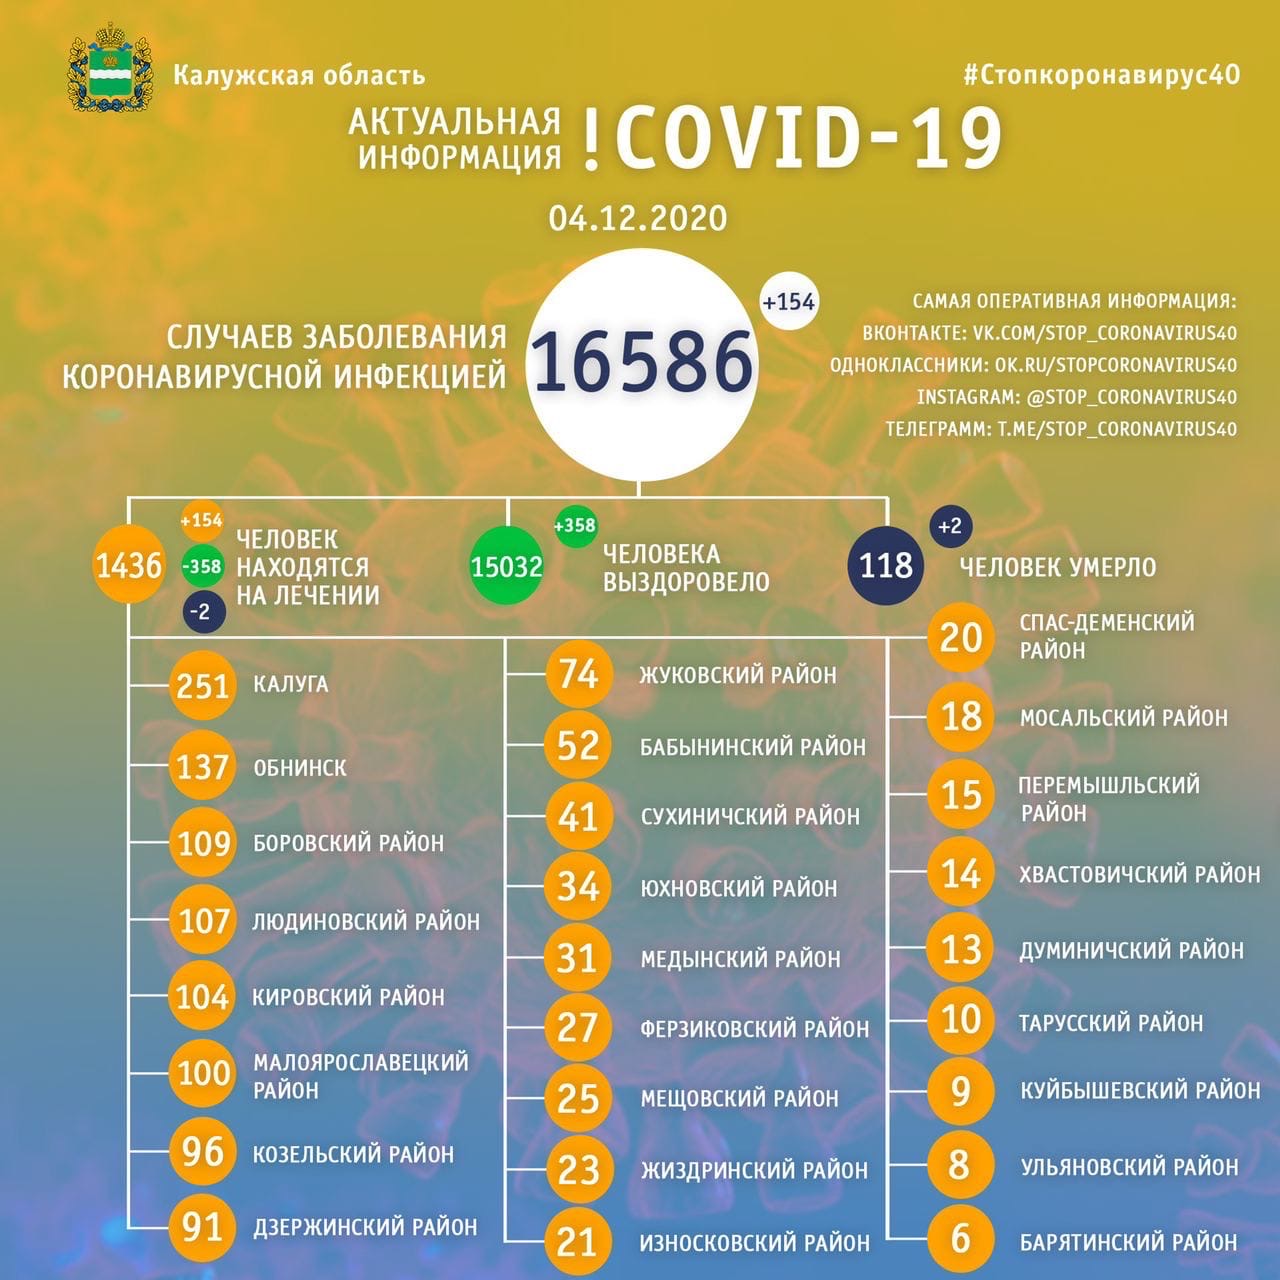 Официальная статистика по коронавирусу в Калужской области на 4 декабря 2020 года.